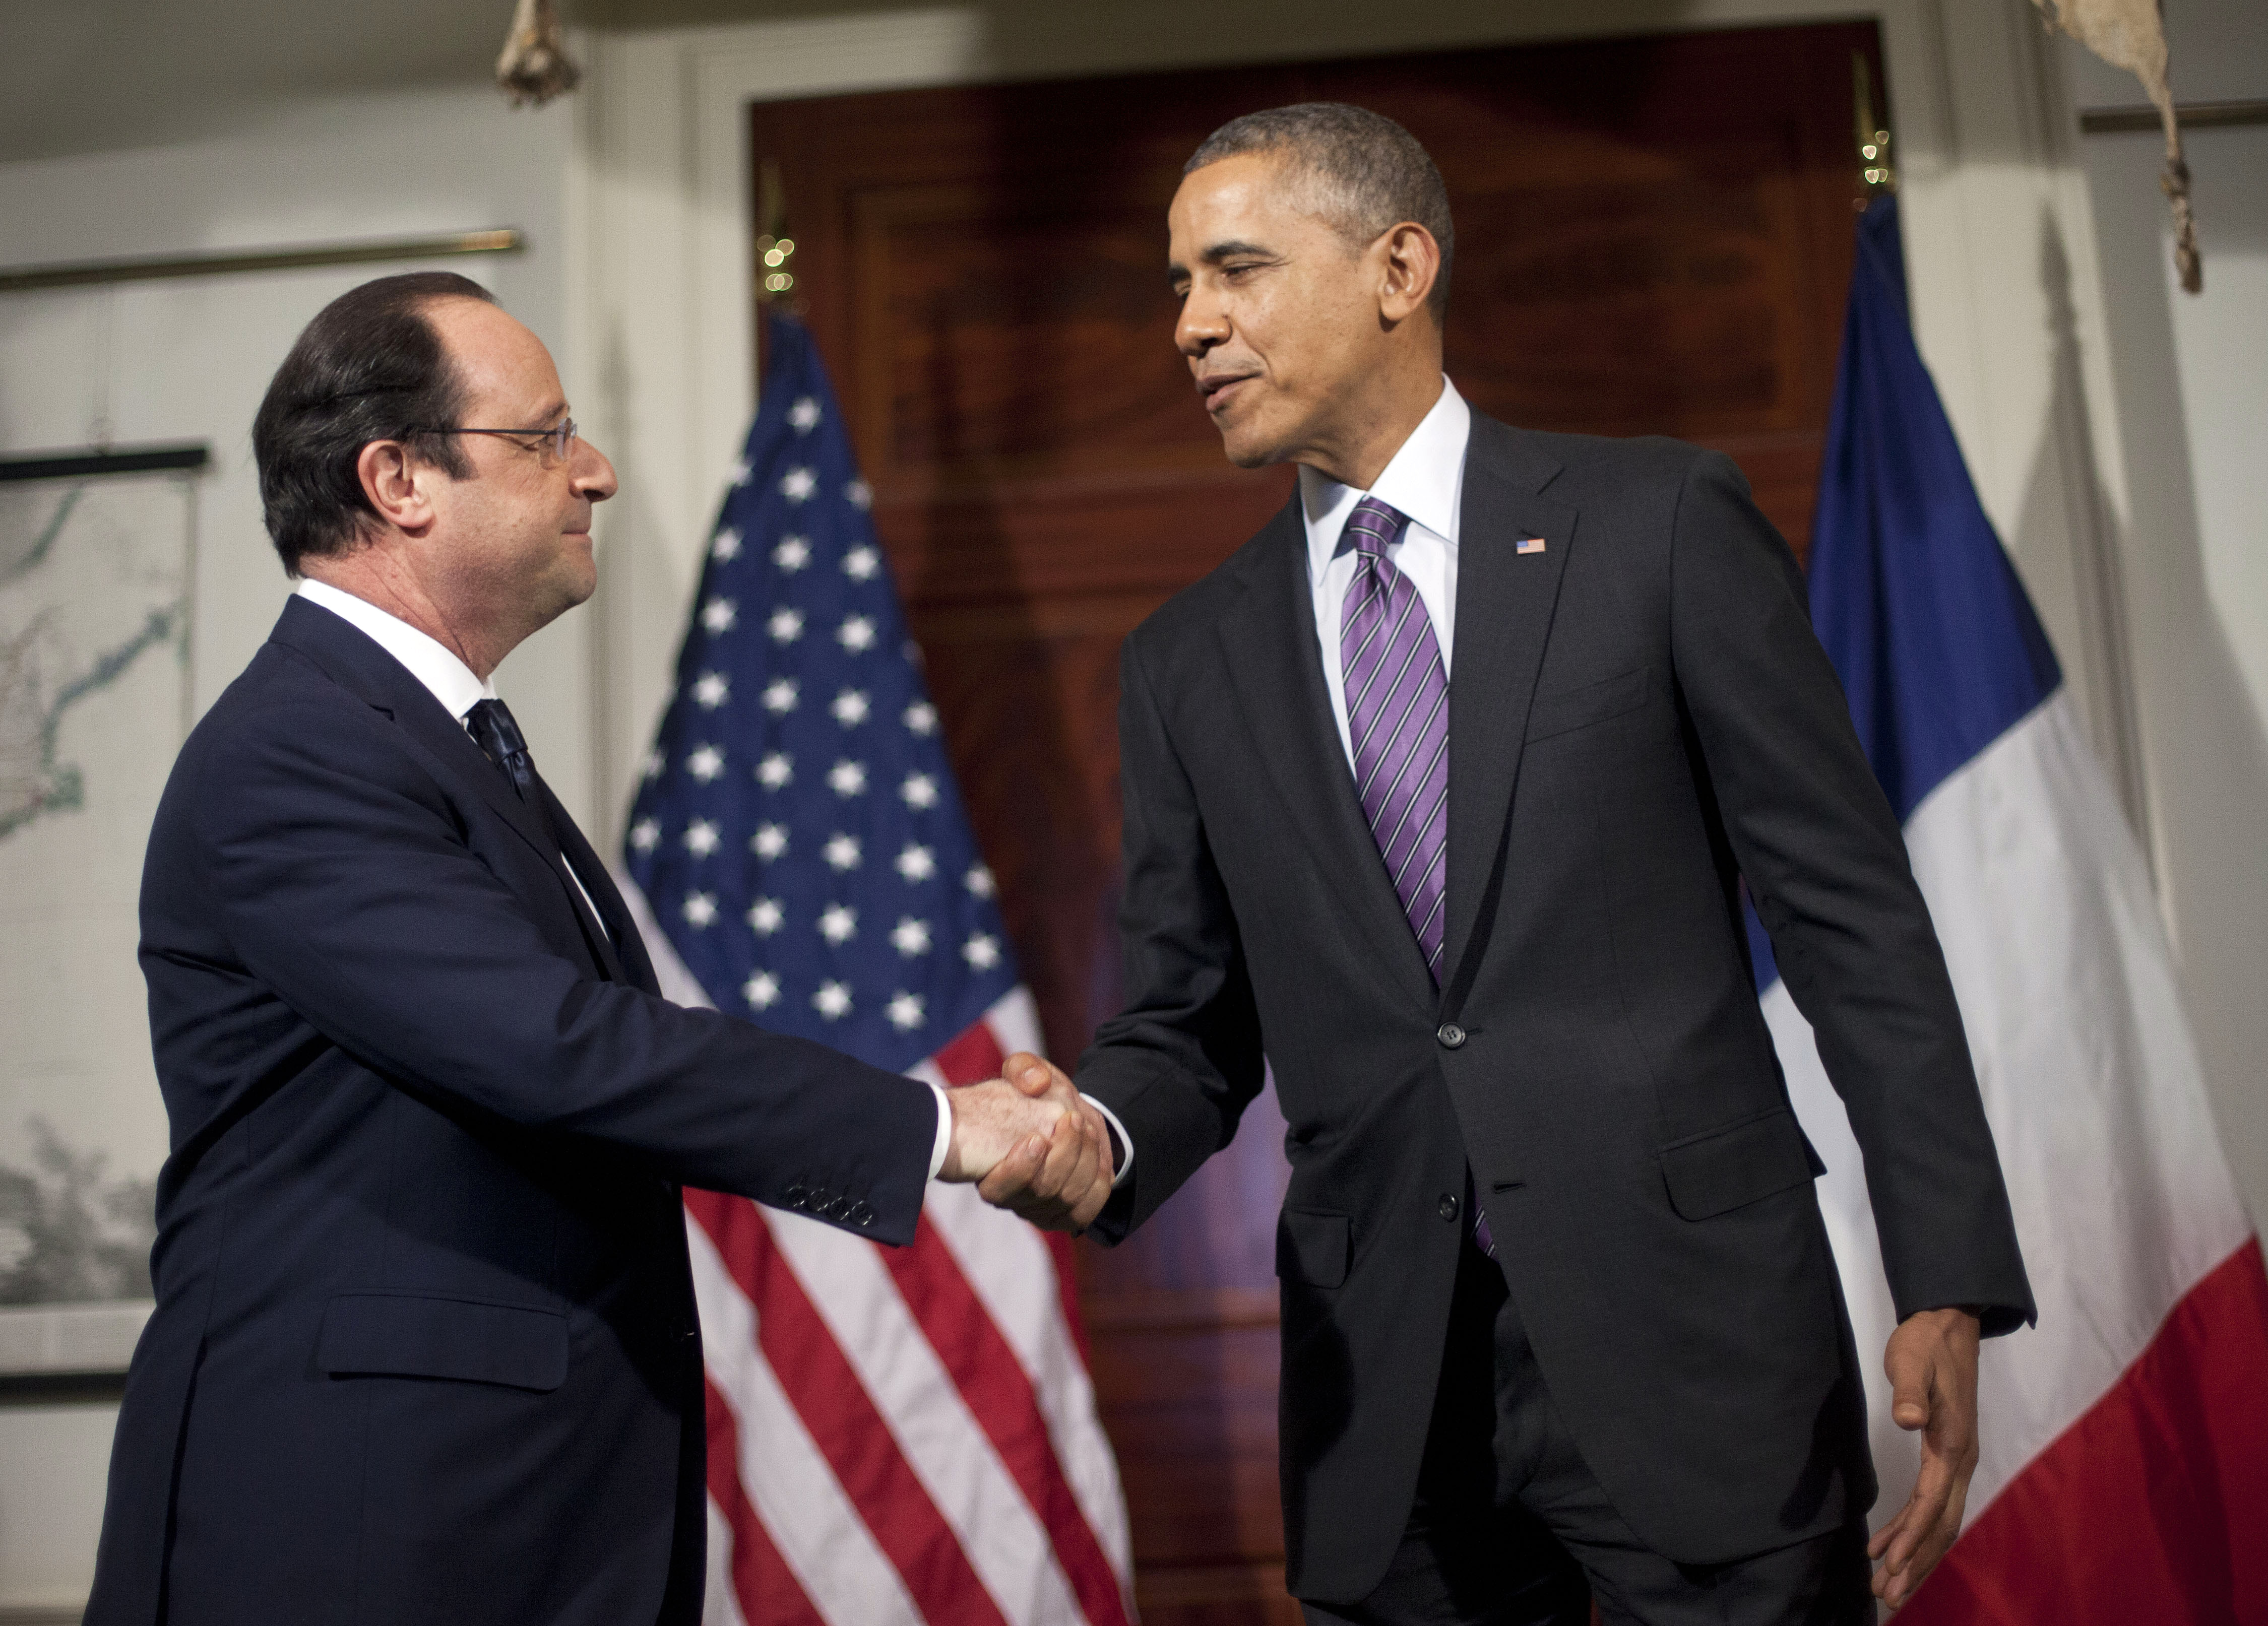 Obama, Hollande open lavish state visit - The Blade